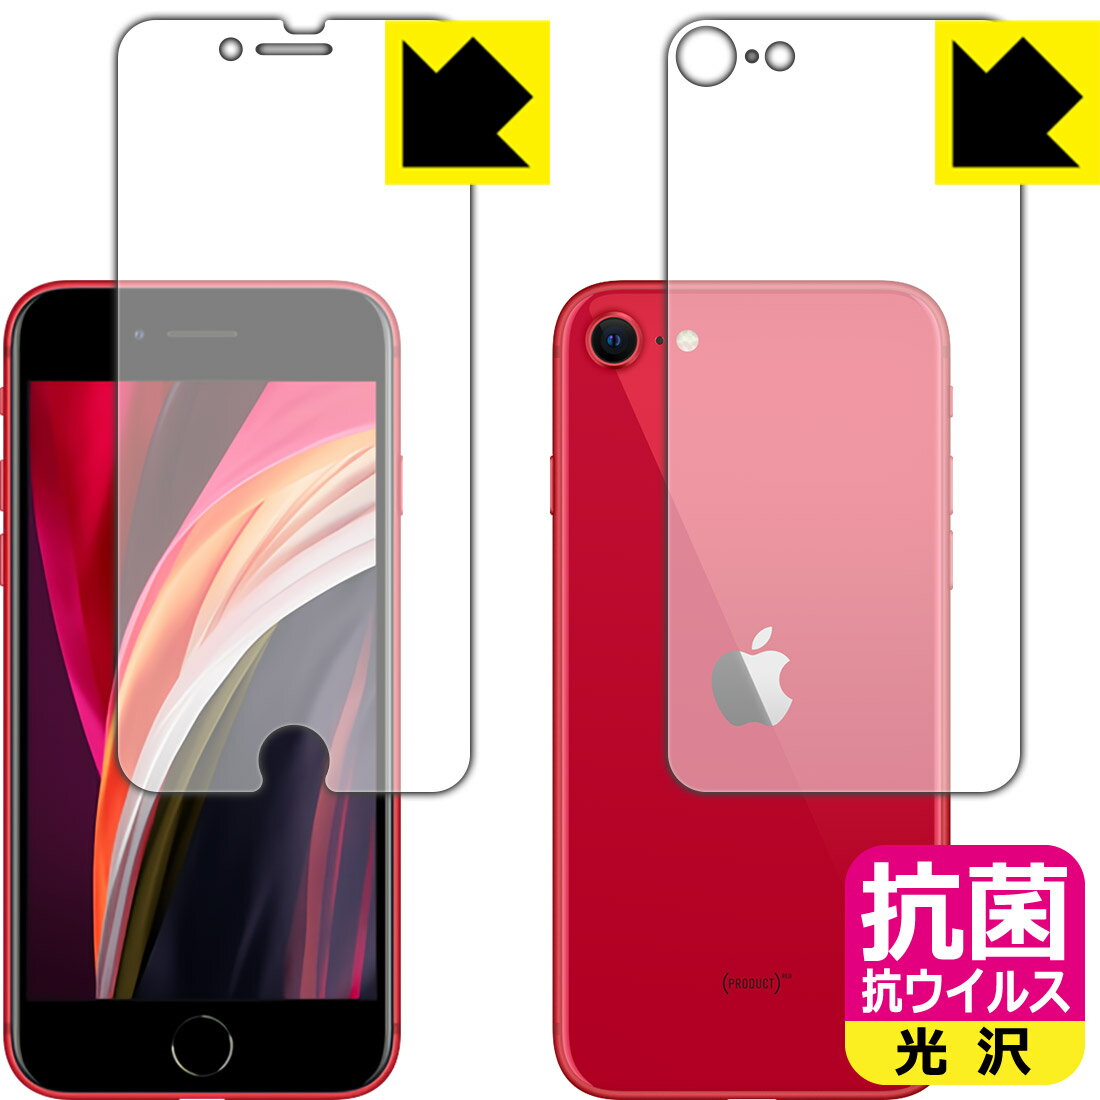 抗菌 抗ウイルス【光沢】保護フィルム iPhone SE (第2世代) 両面セット 【O型】 日本製 自社製造直販